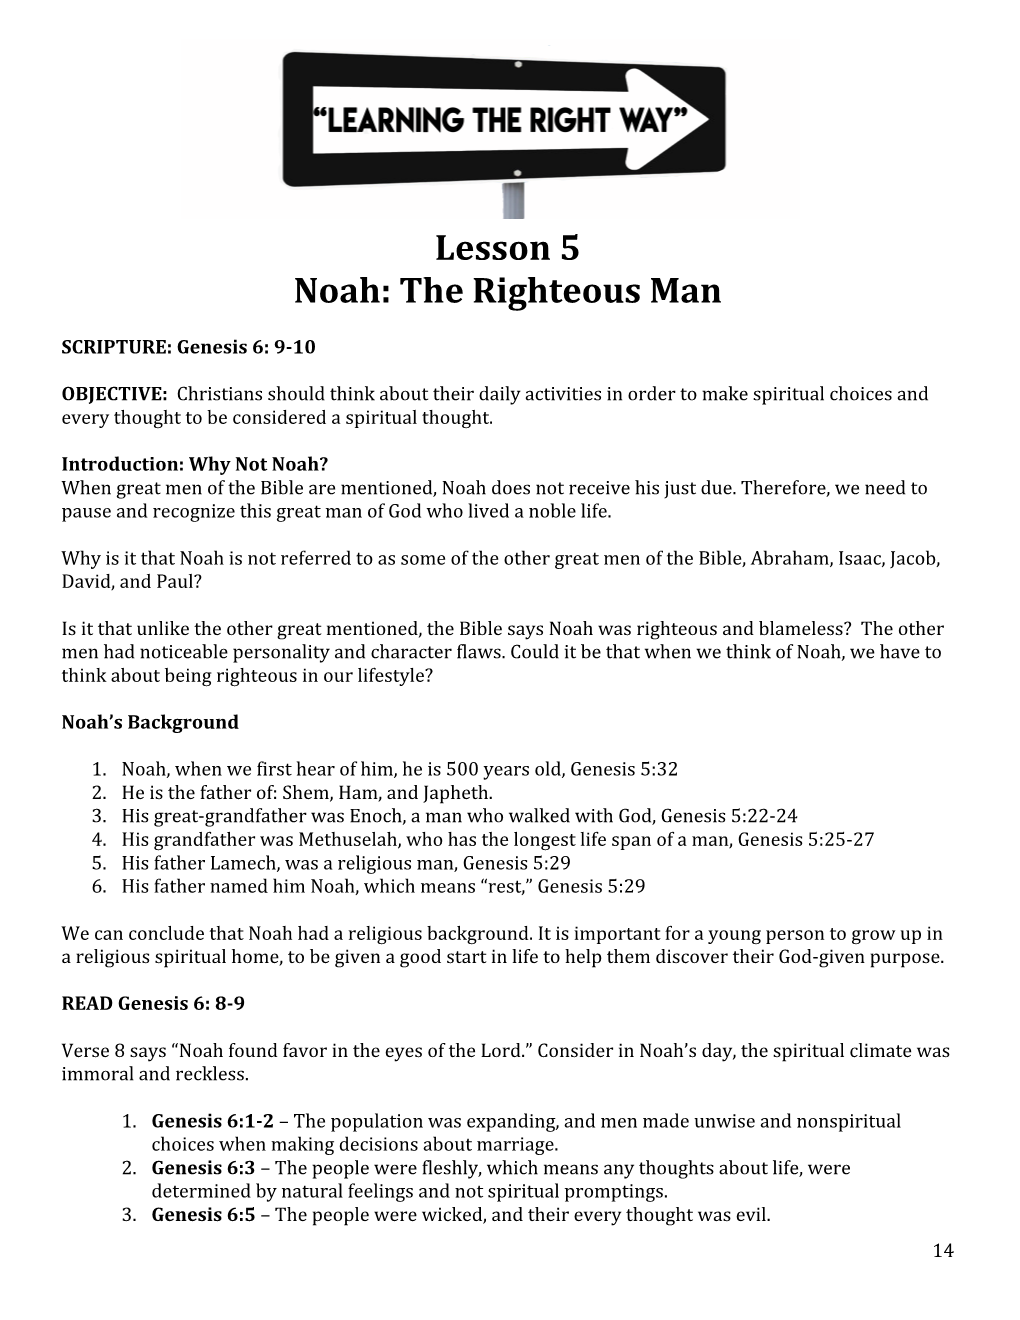 Lesson 5 Noah: the Righteous Man